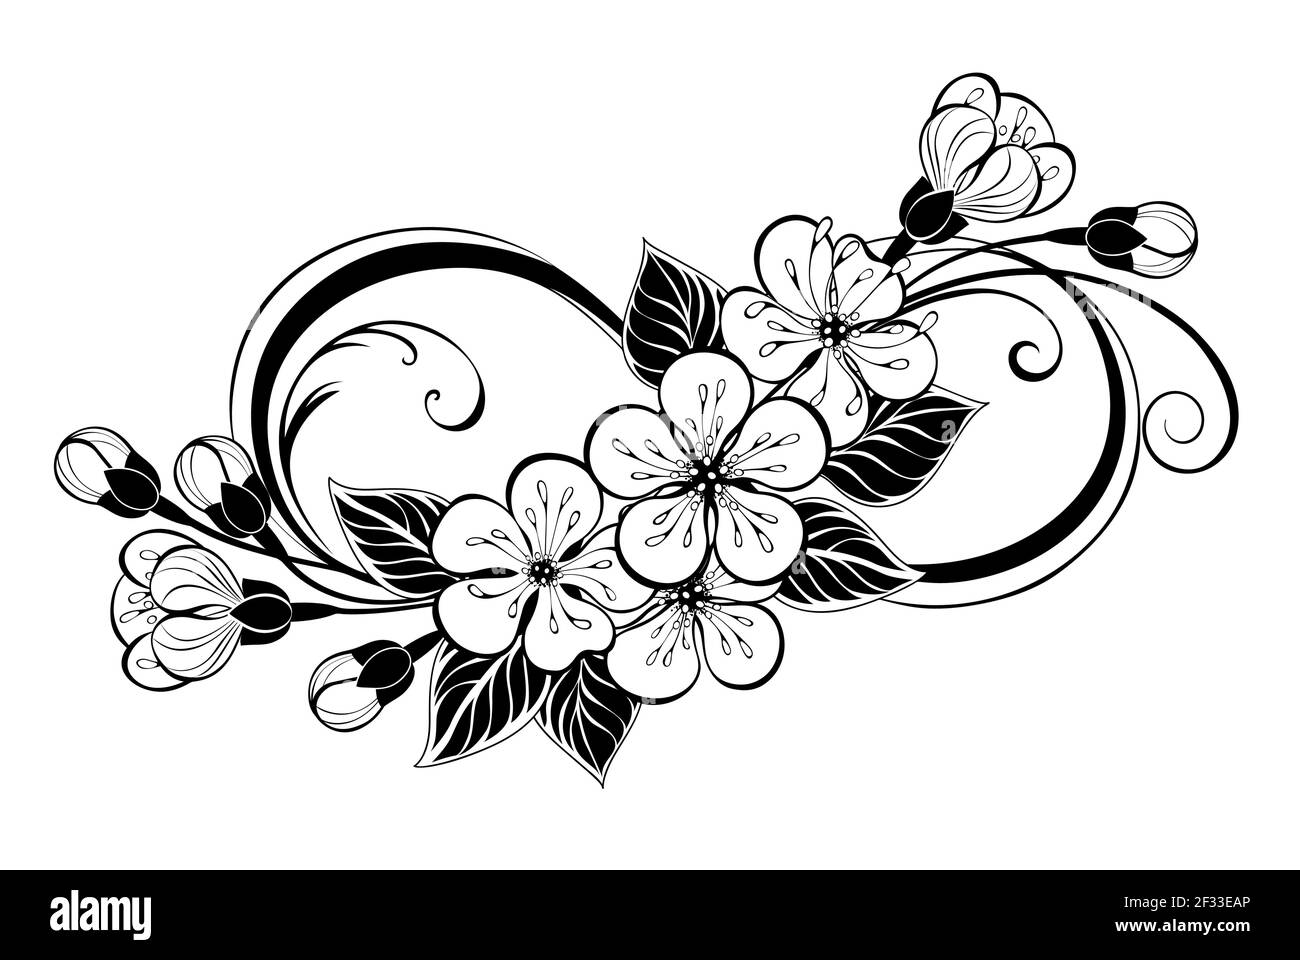 Silhouette simbolo dell'infinito, decorata con contorni, disegnata artisticamente, contorno, graziosi fiori sakura e foglie su sfondo bianco. Colorazione. Illustrazione Vettoriale